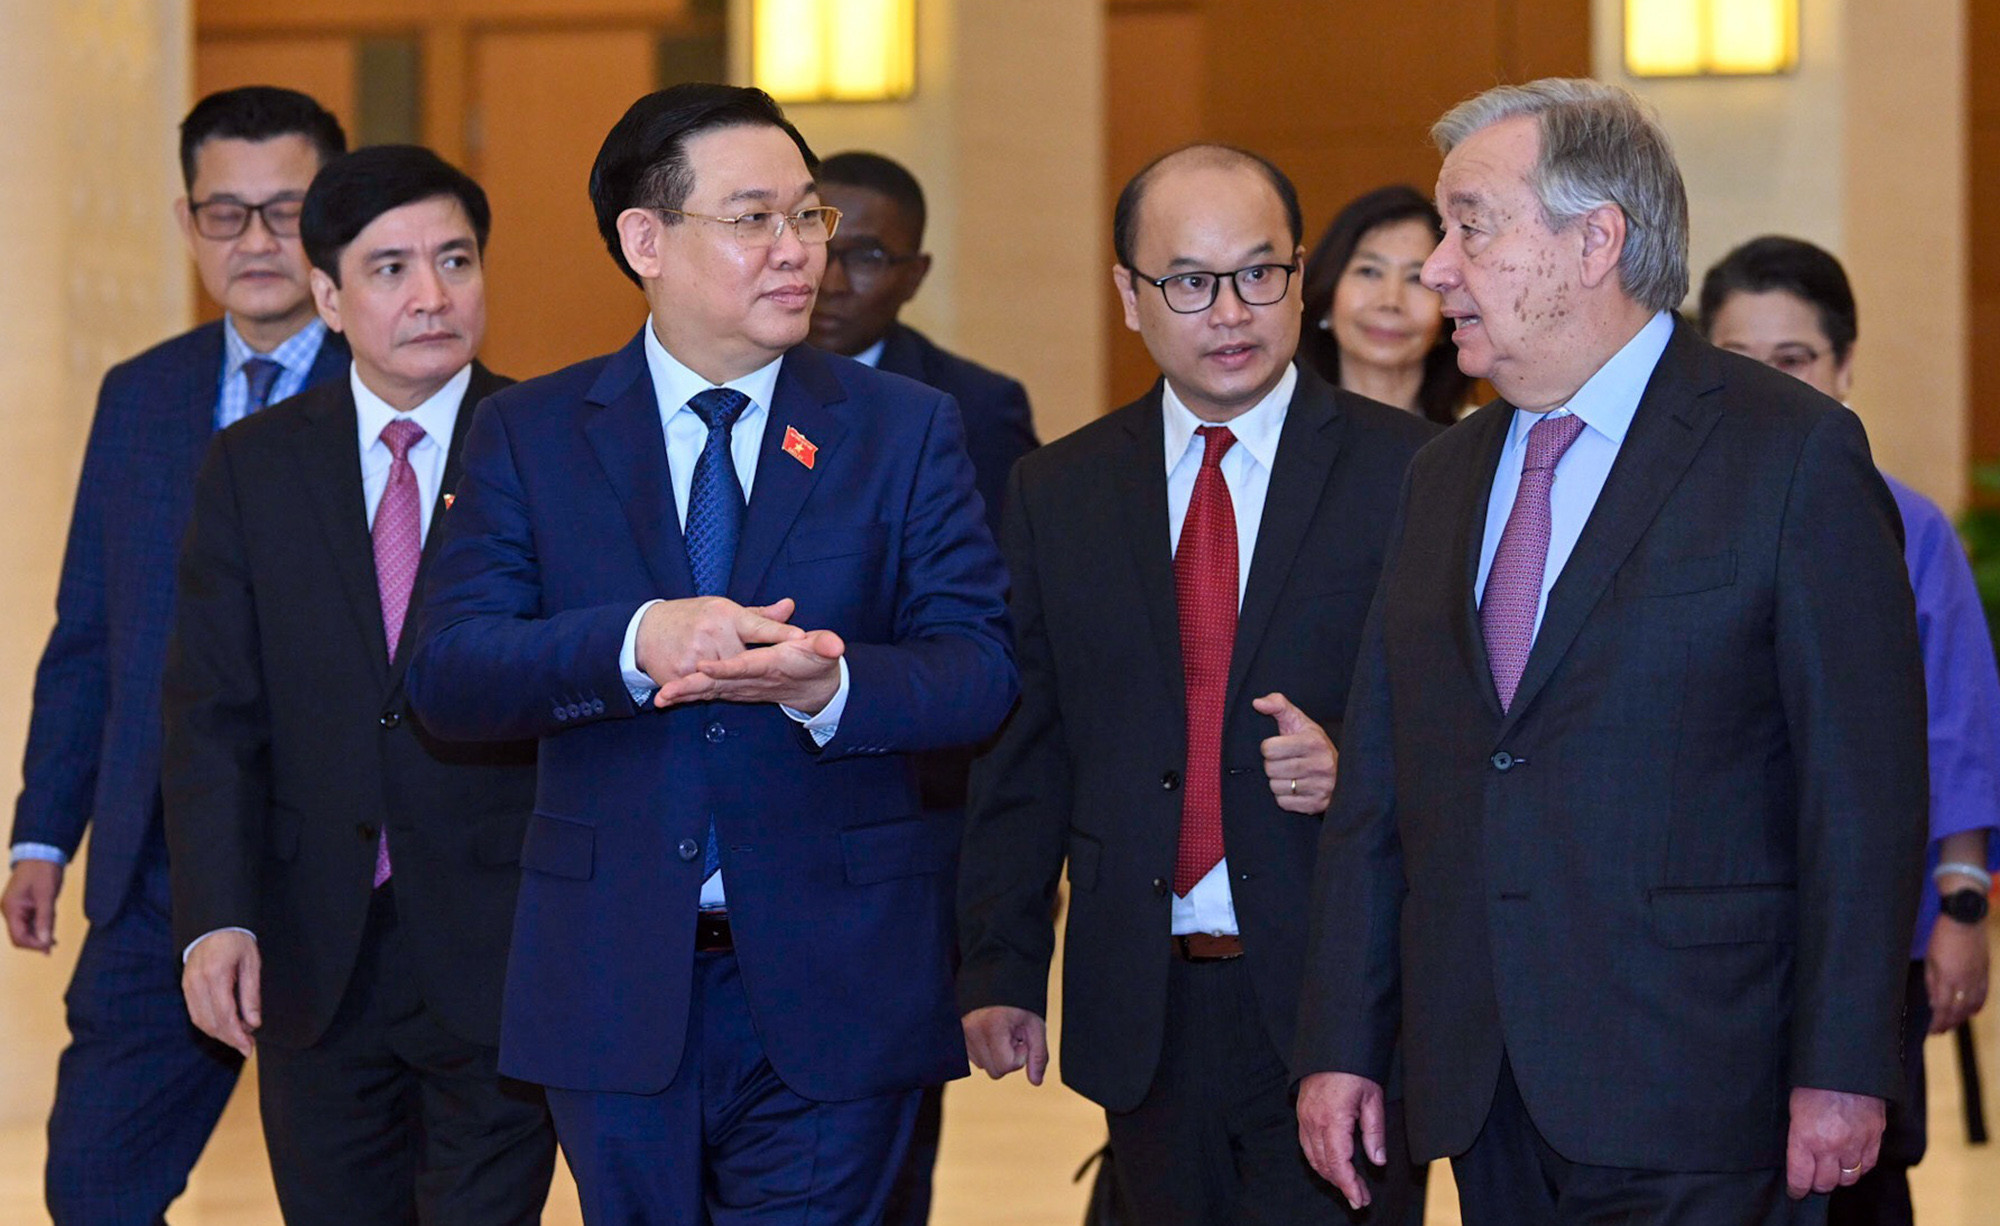 Tổng Thư ký Liên Hợp Quốc: Việt Nam là một tấm gương vô cùng đặc biệt